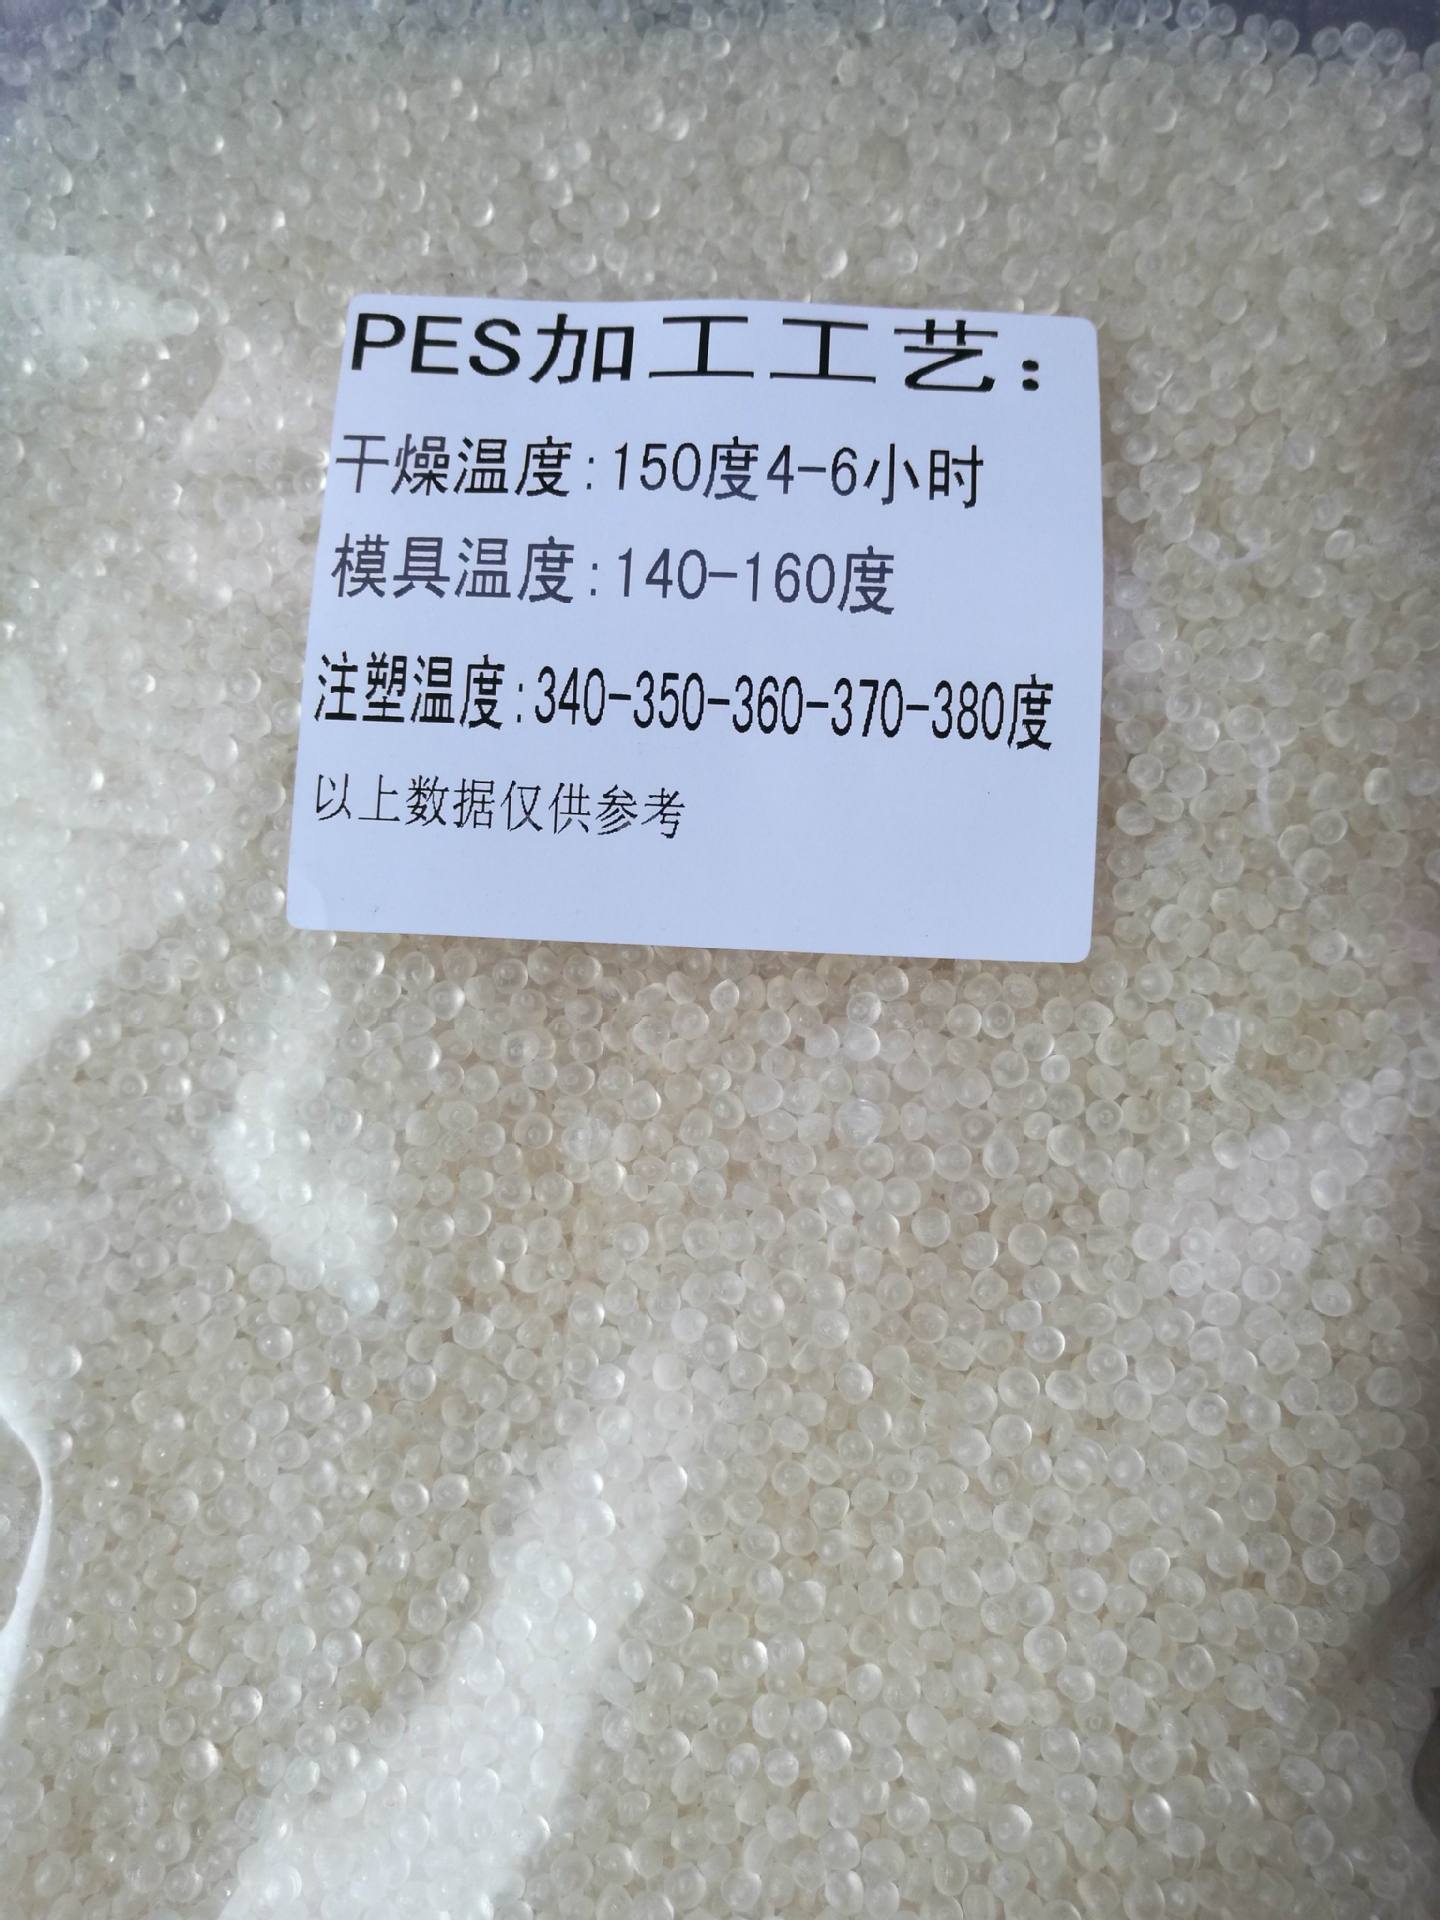 优惠供应PES/德国巴斯夫/S6010 耐高温 标准级 pes聚醚砜树脂示例图9